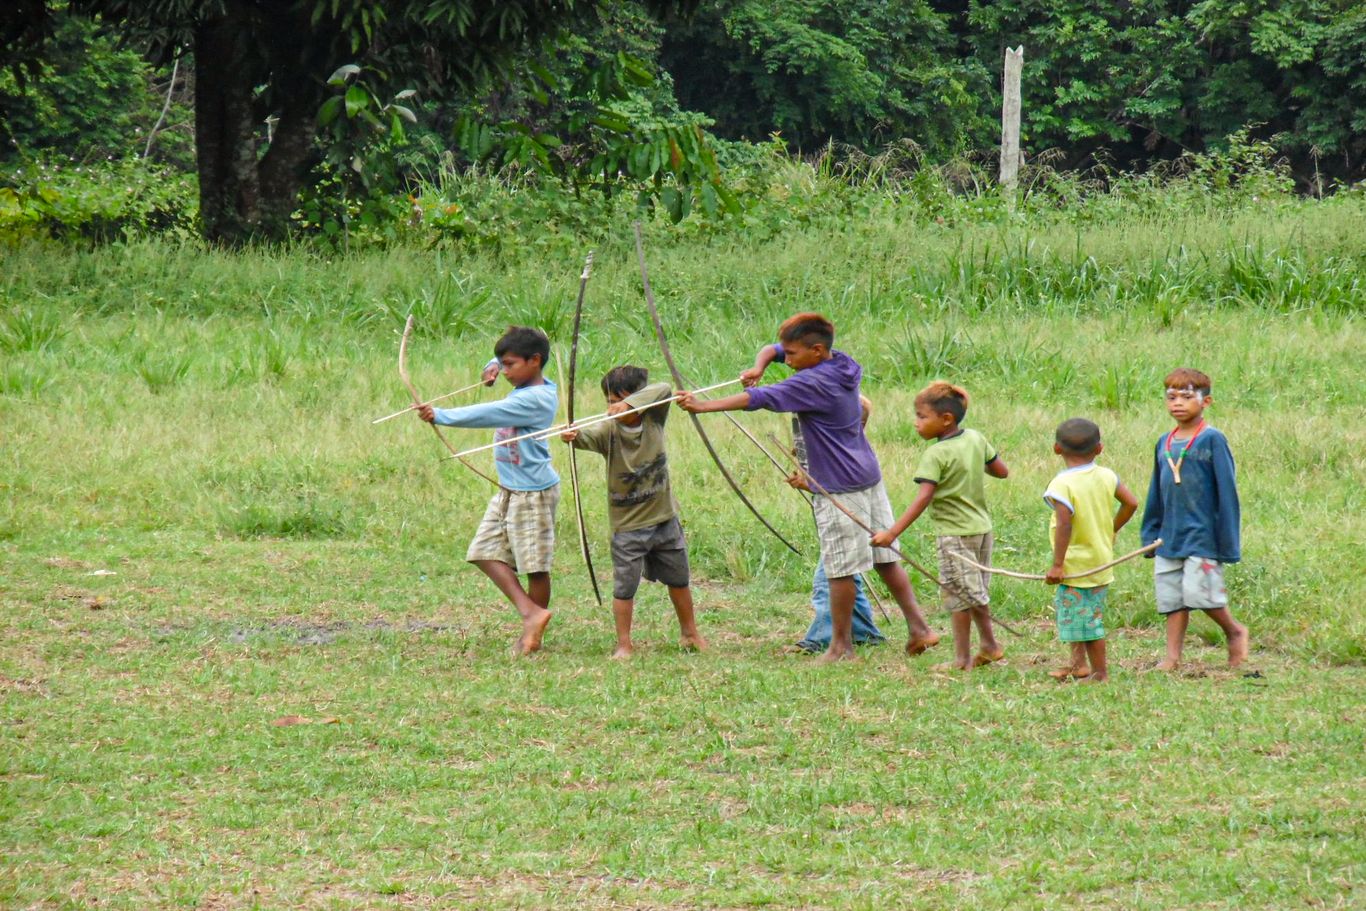 Mehrere Kinder stehen nebeneinander auf einer Wiese und halten jeweils Pfeil und Bogen in der Hand. Manche Kinder haben den Bogen gespannt. Indigenen Kindern werden Wissen und Fähigkeiten zum Leben im Regenwald vermittelt. Eigene Sprache und Bräuche, ihre Lieder und Geschichten sind wertvoll und wichtig, damit ihre Kultur erhalten bleibt.